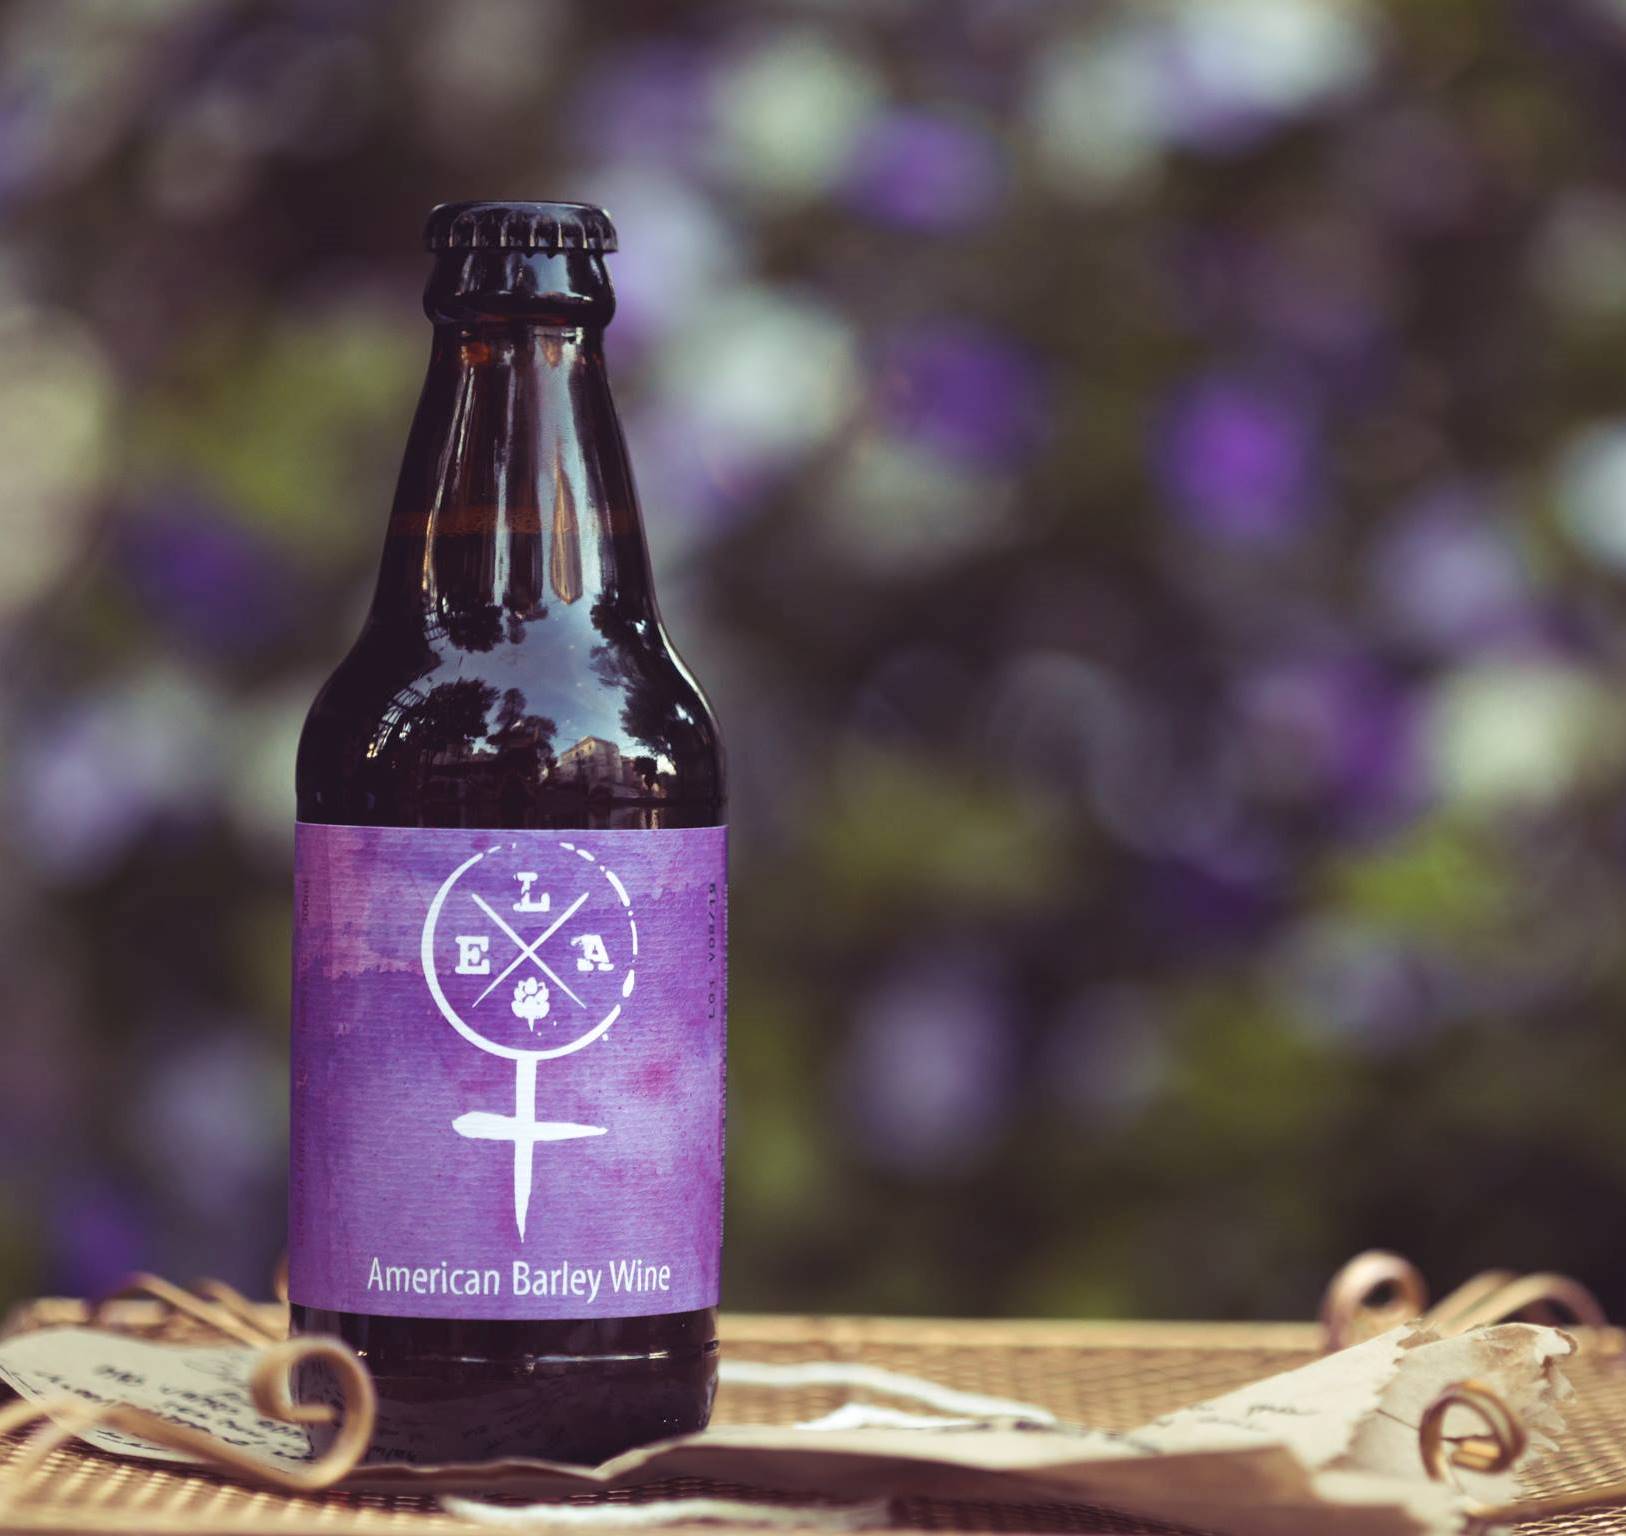 A cerveja E.L.A., uma American Barley Wine produzida por mulheres, será um dos rótulos servidos no jantar harmonizado desta quinta